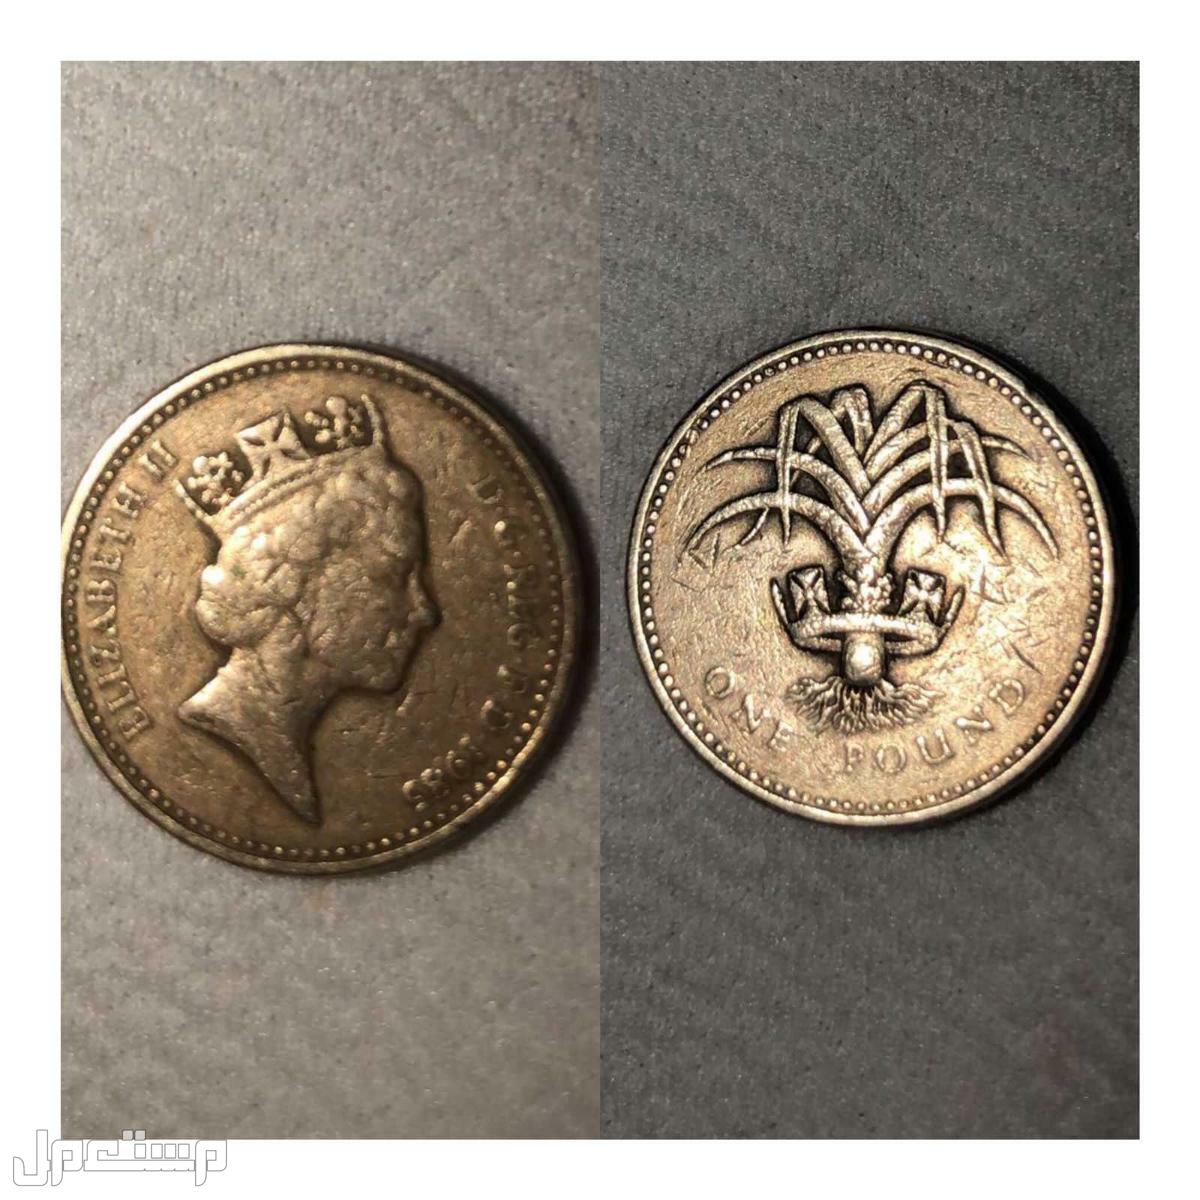 عملات معدنية متنوعة و قديمة One pound 1985